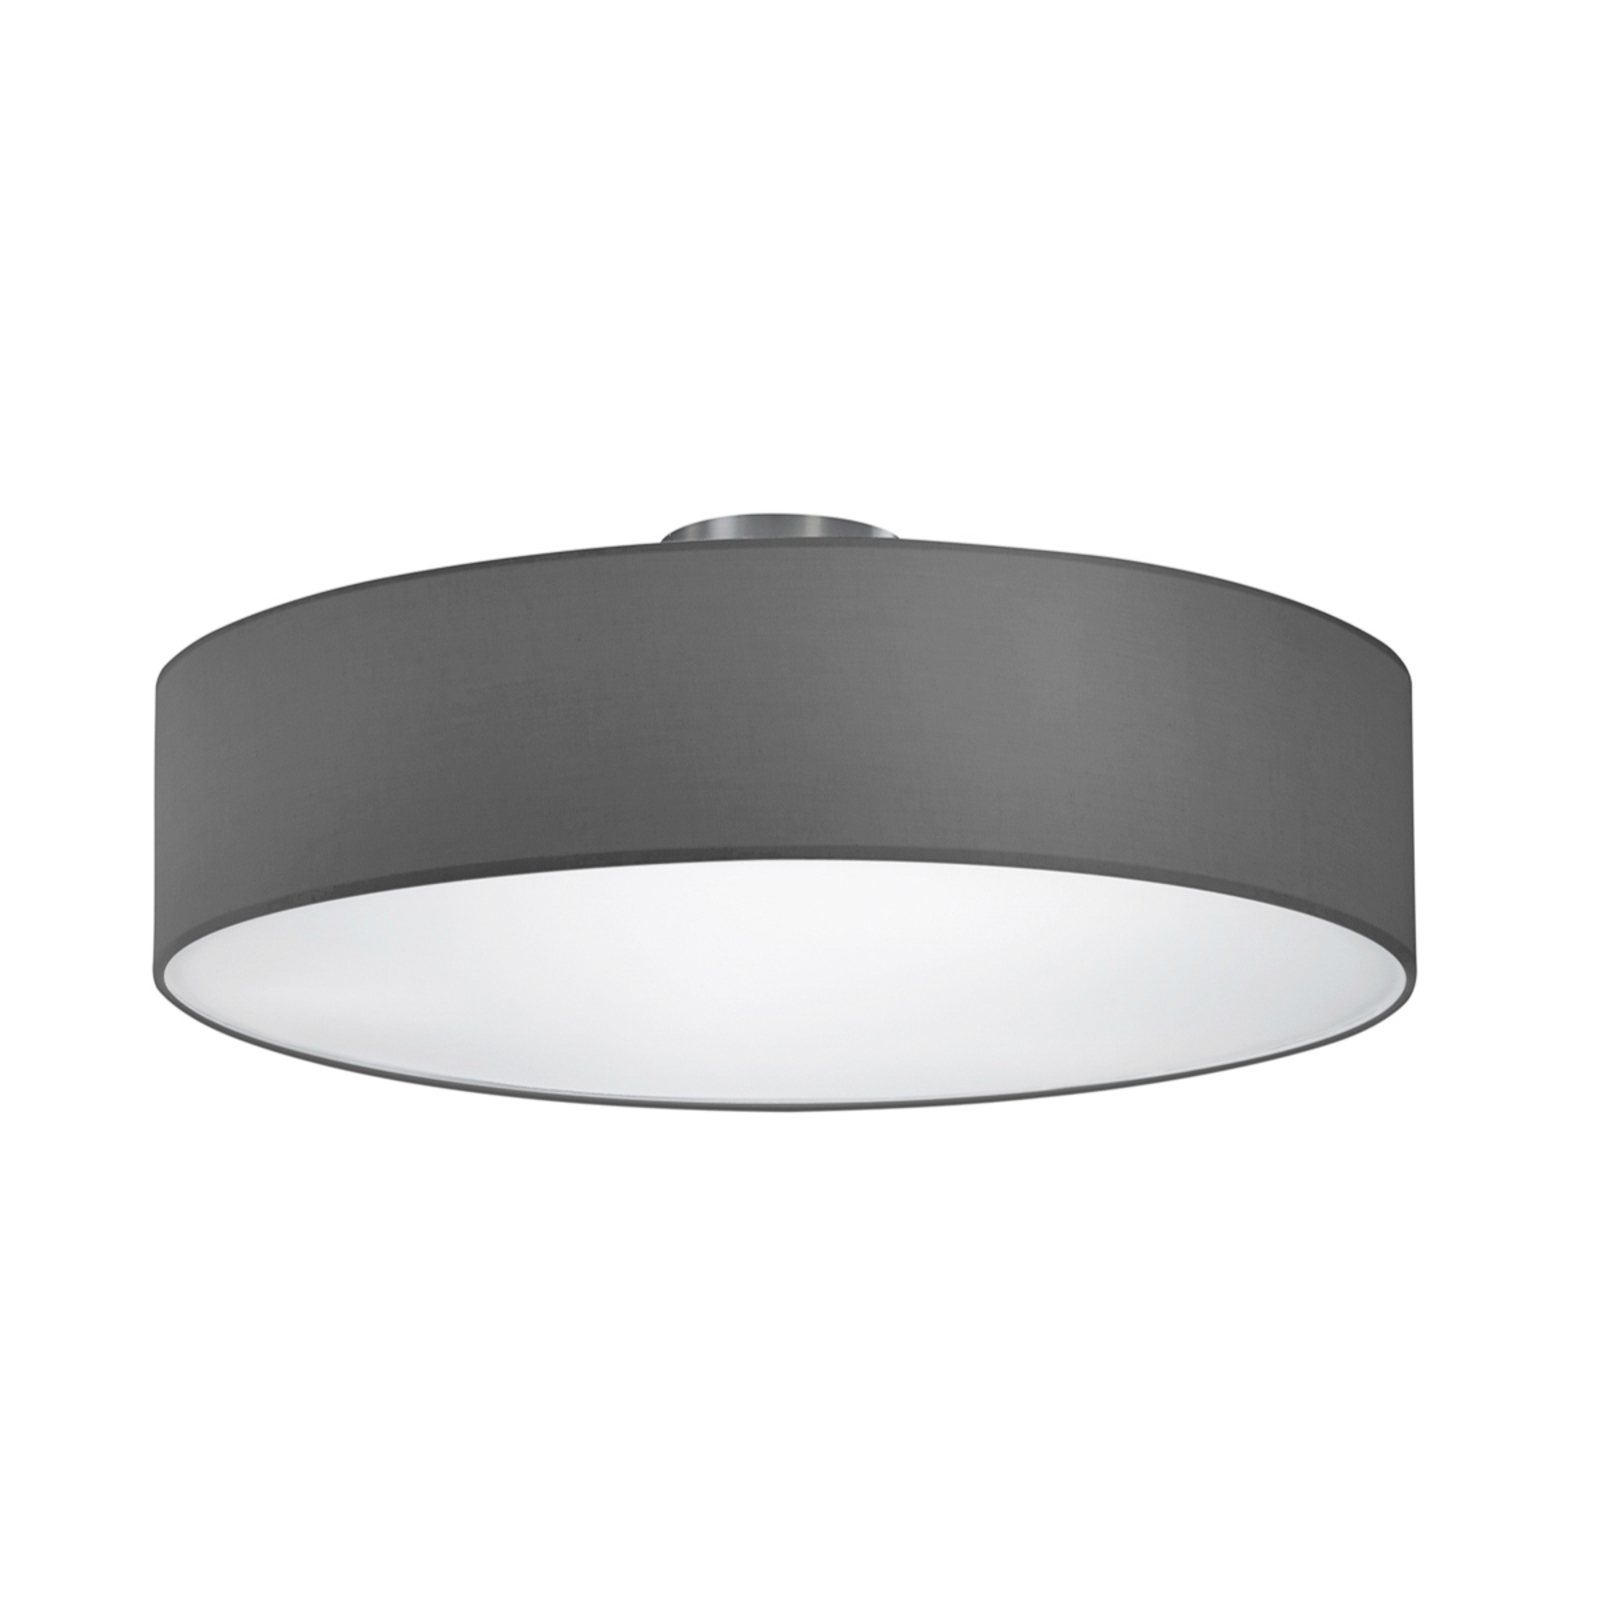 Hotel ceiling light, matt nickel/grey, Ø 50 cm